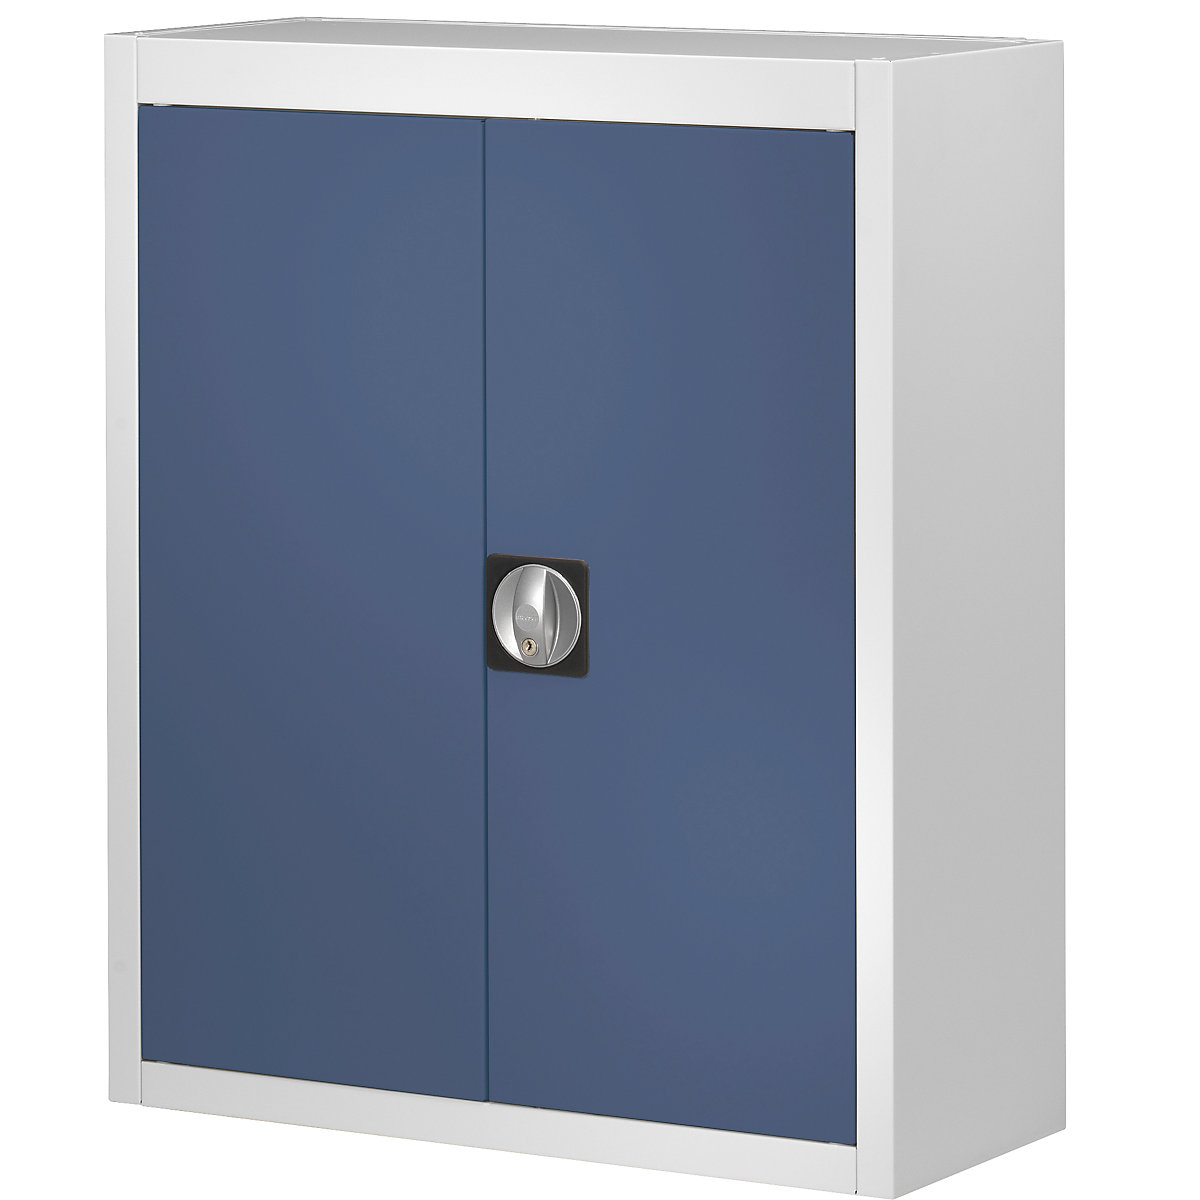 Skladová skříň, bez přepravek s viditelným obsahem – mauser, v x š x h 820 x 680 x 280 mm, dvoubarevná, korpus šedý, dveře modré-6